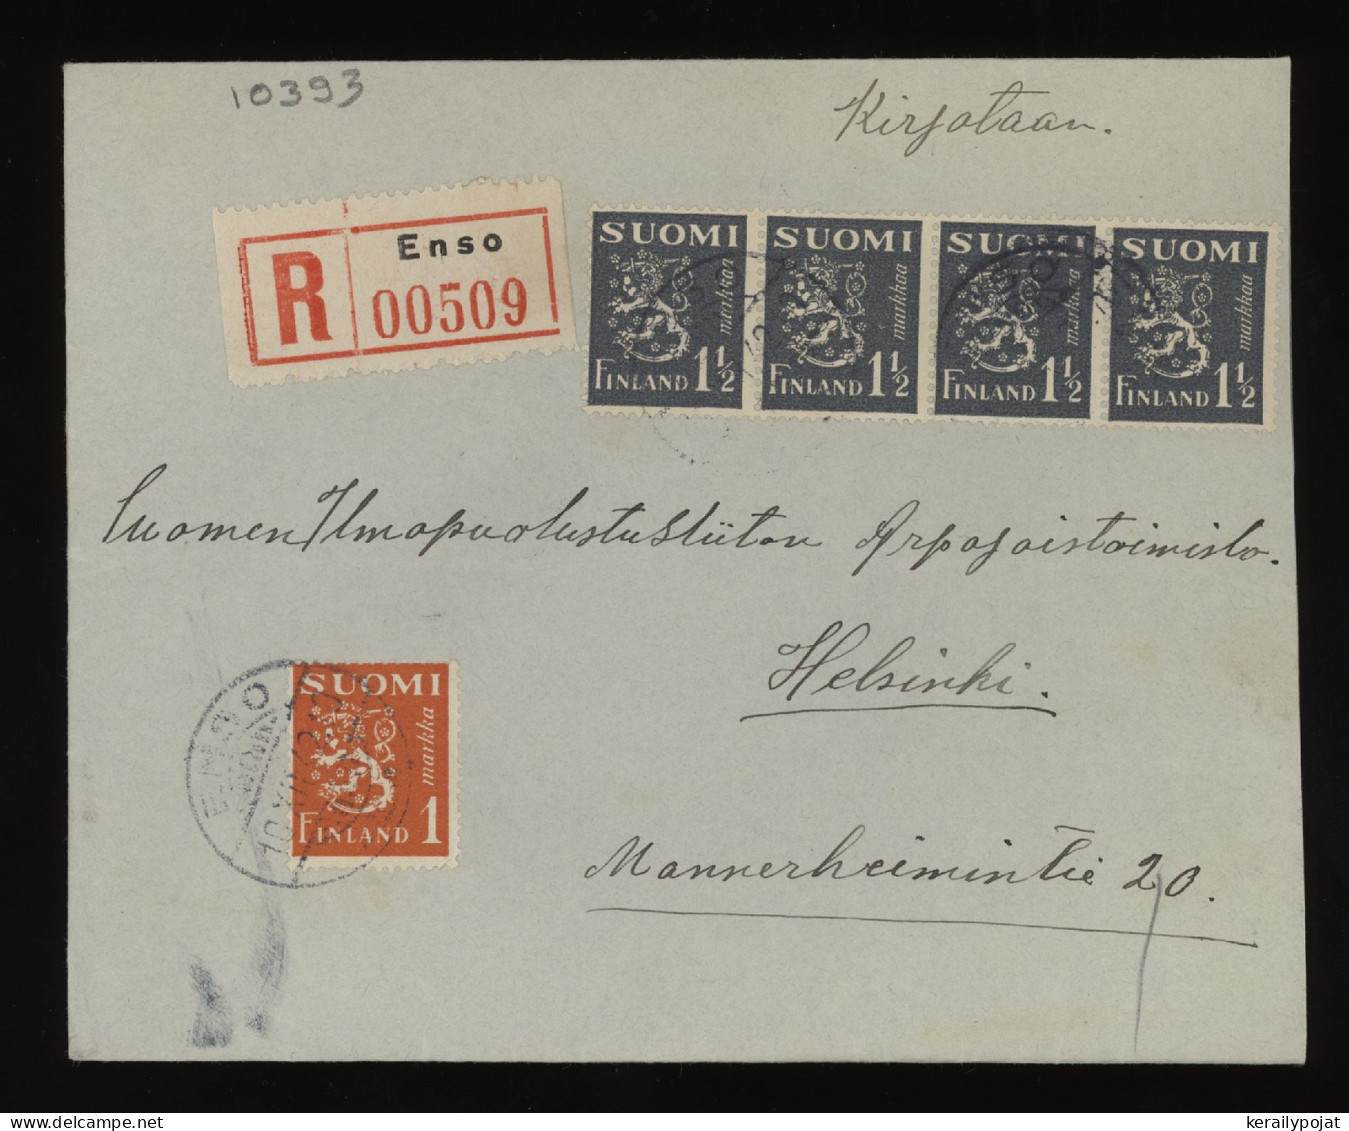 Finland 1942 Enso Registered Cover__(10393) - Cartas & Documentos